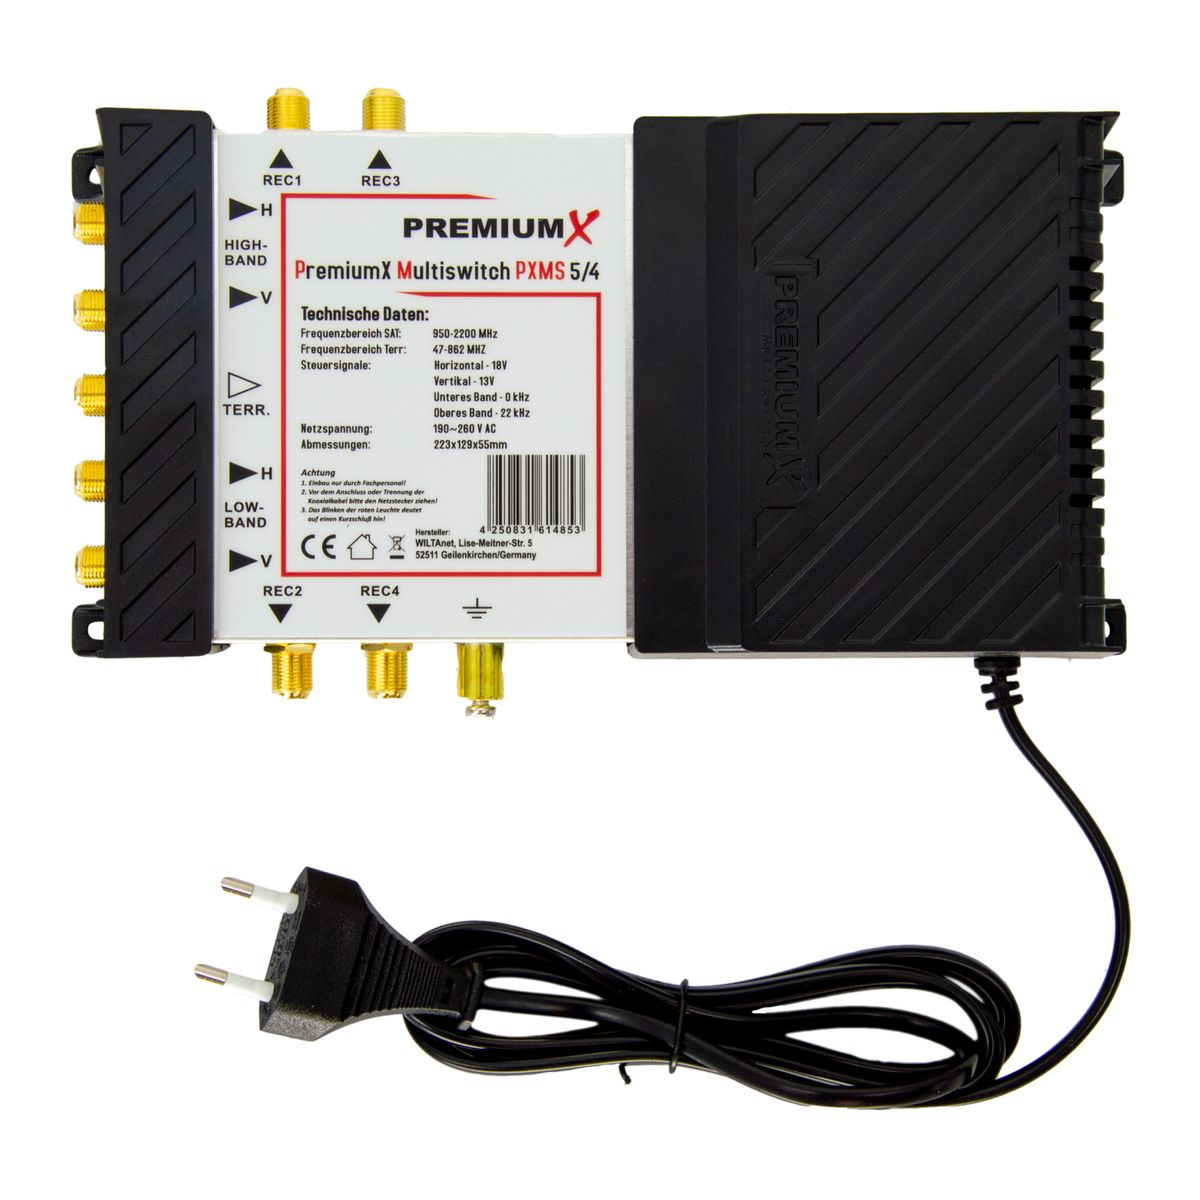 PREMIUMX PXMS 5/4 mit Netzteil Multiswitch für 1 Sat-Multischalter 4 Multischalter Teilnehmer SAT